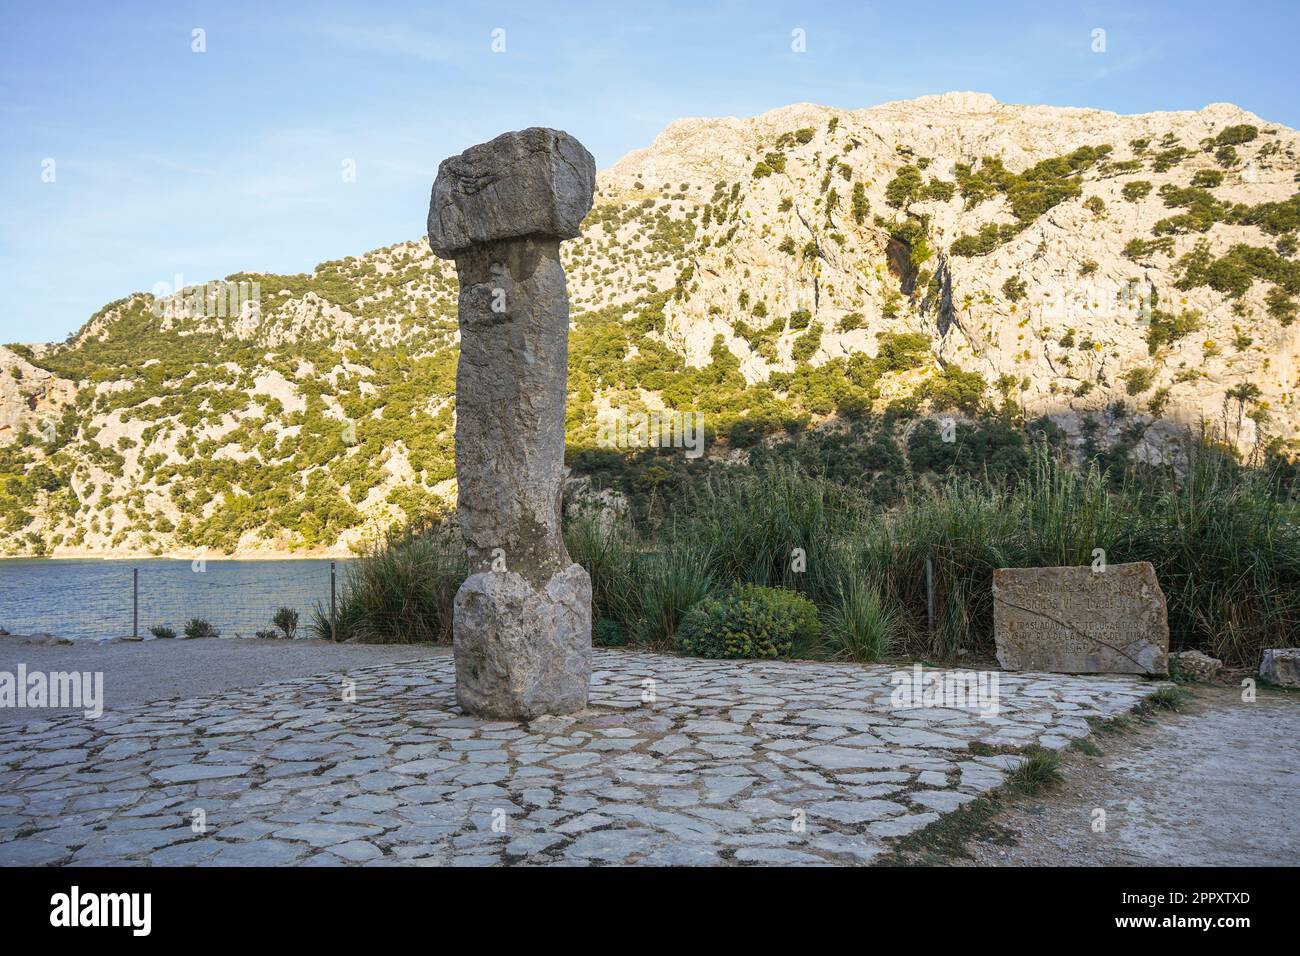 Santuario Columna, Ancient column Talaiotic culture at the Gorg Blau a artificial lake Tramuntana mountains, Sierra de Tramontana in Mallorca, Spain. Stock Photo